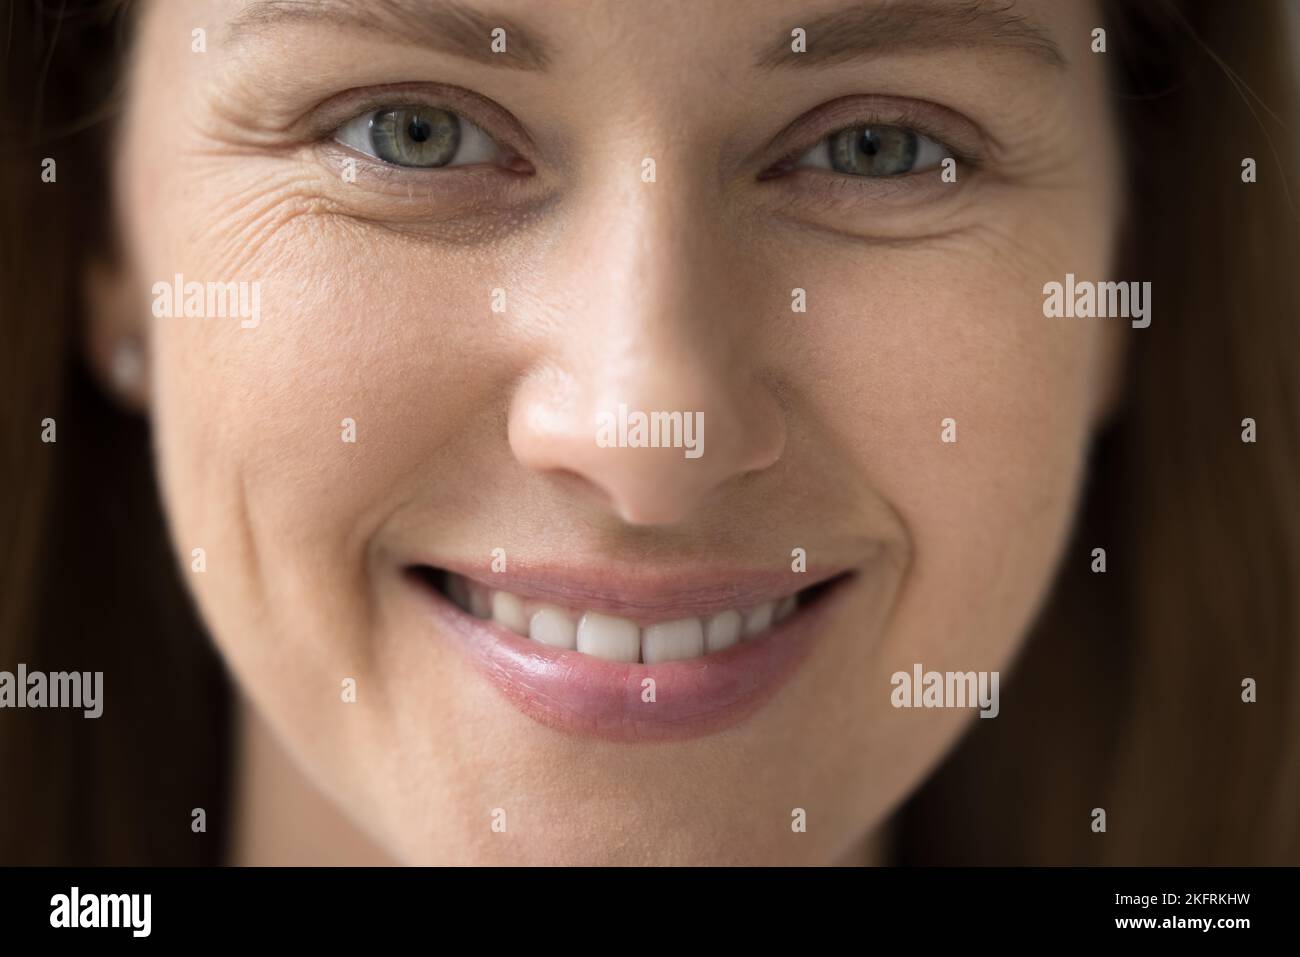 Vista frontal recortada de la cara de la mujer en primer plano Foto de stock